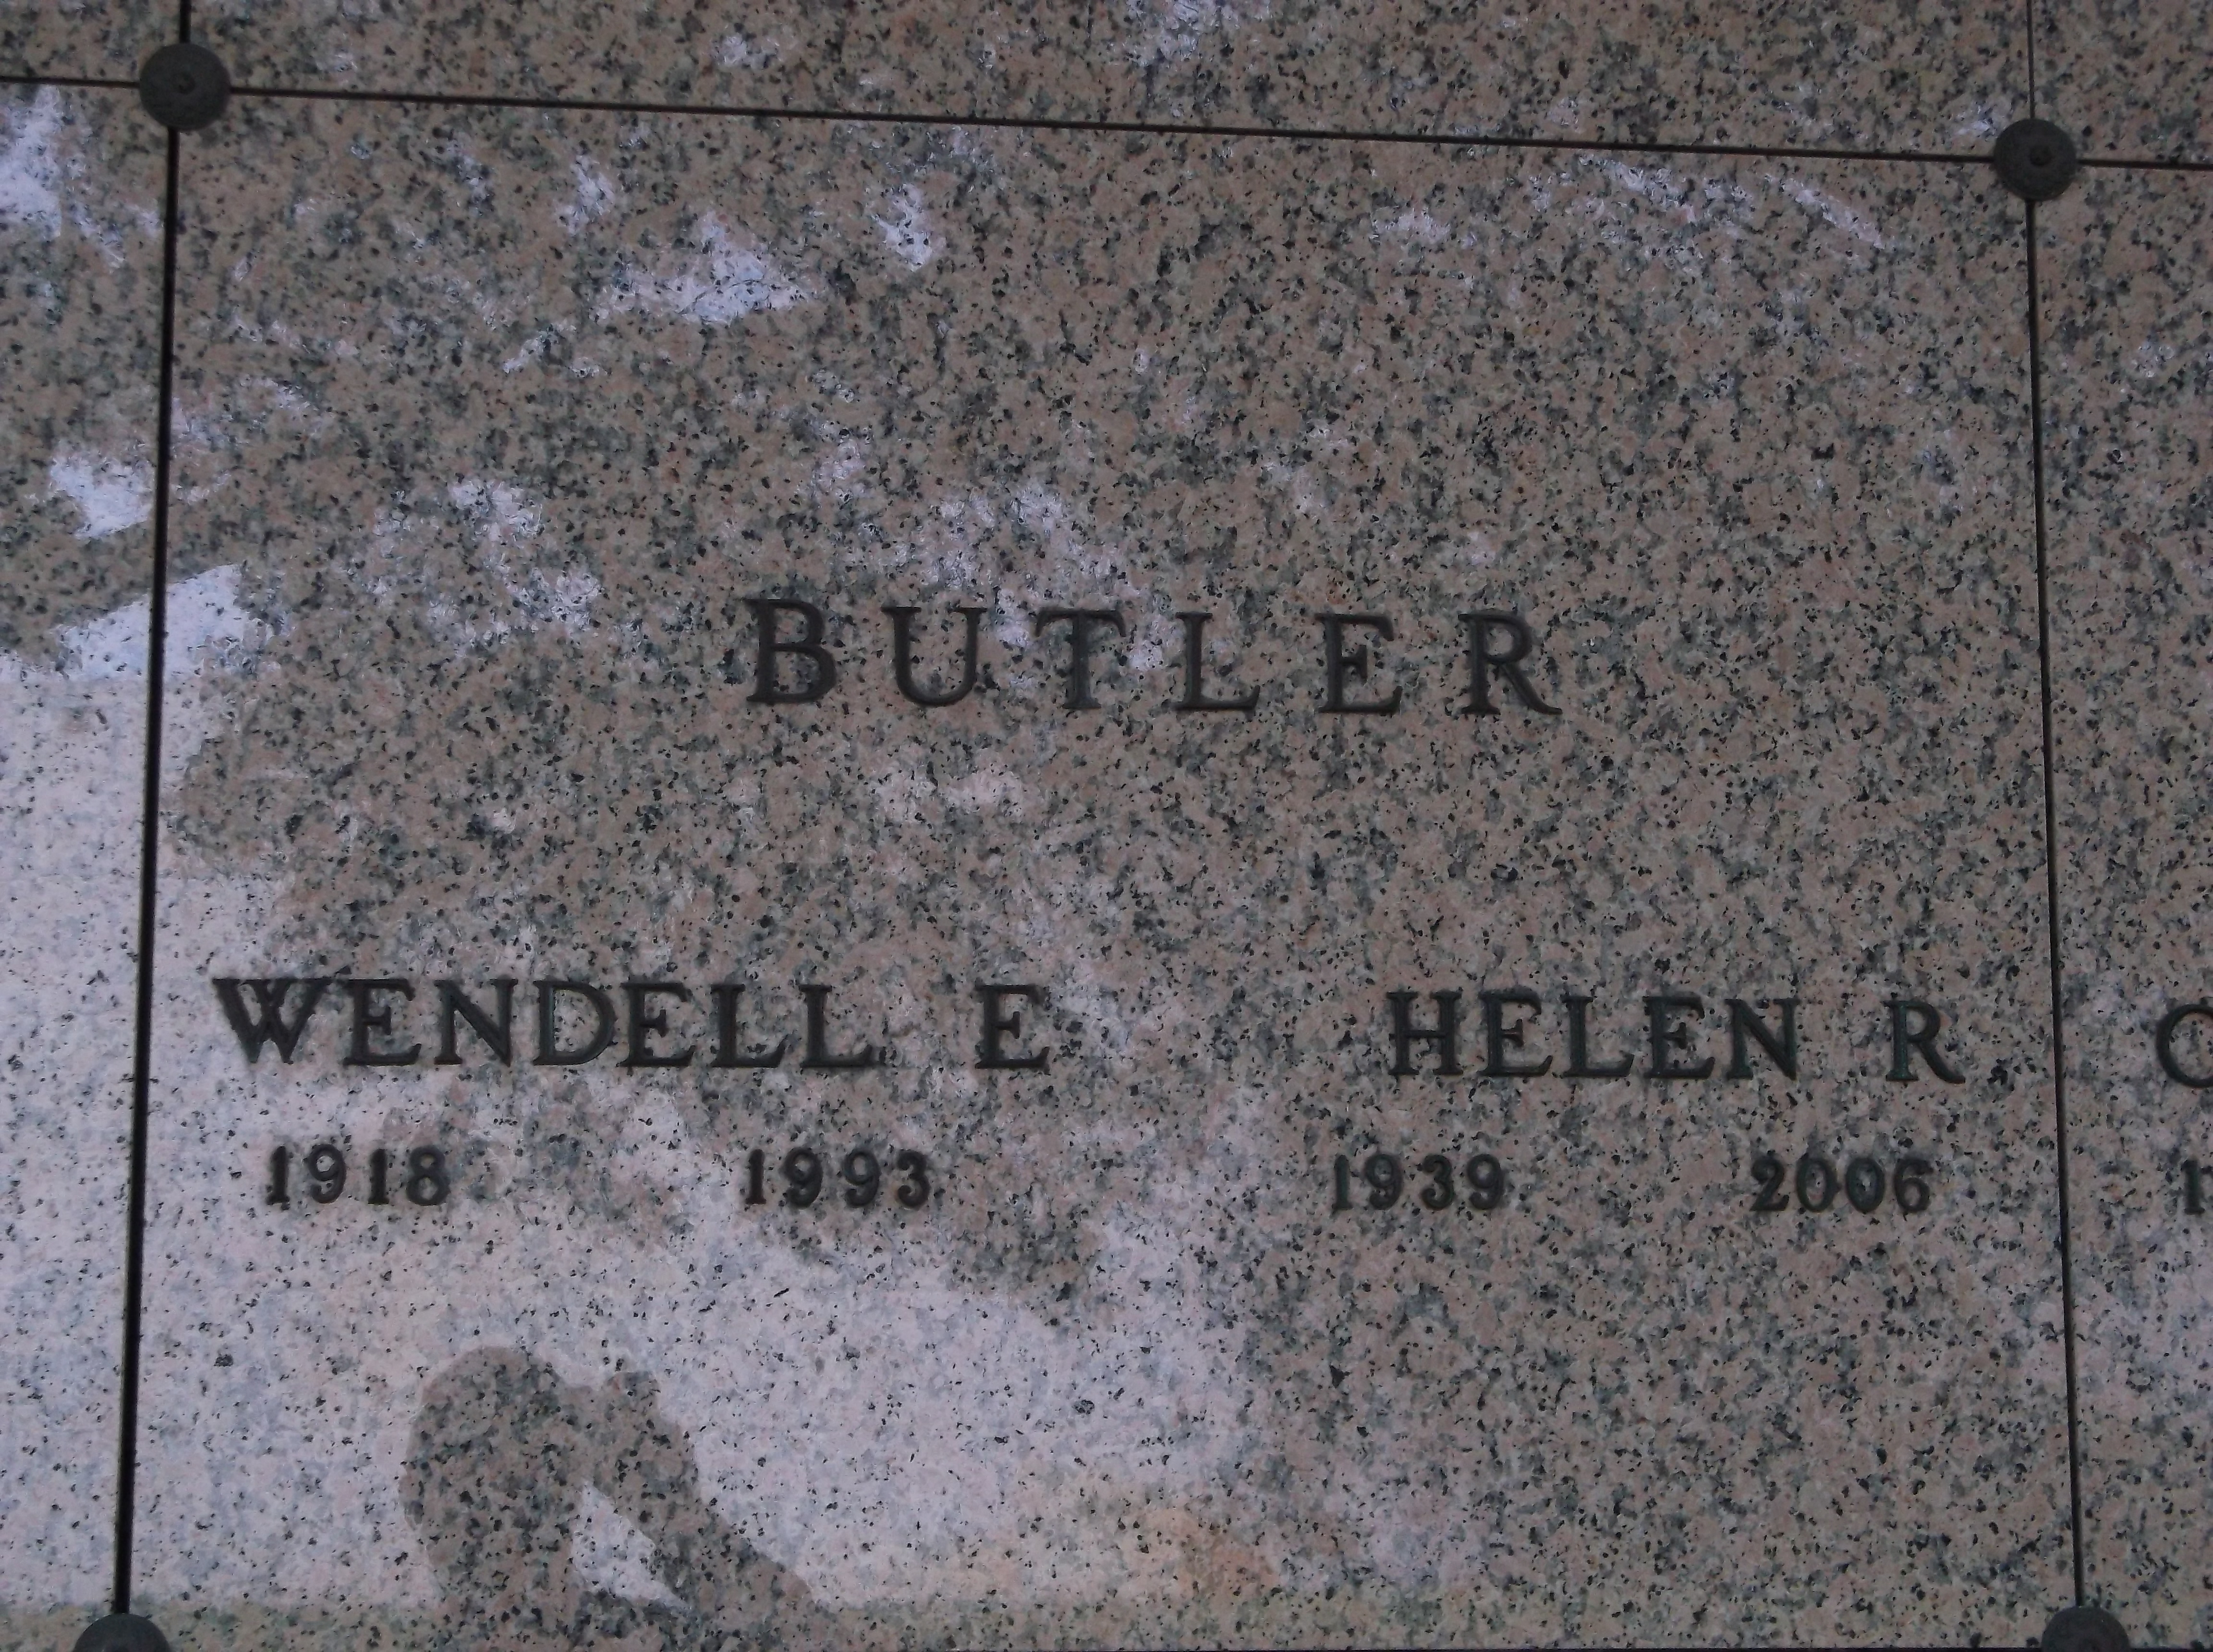 Helen R Butler